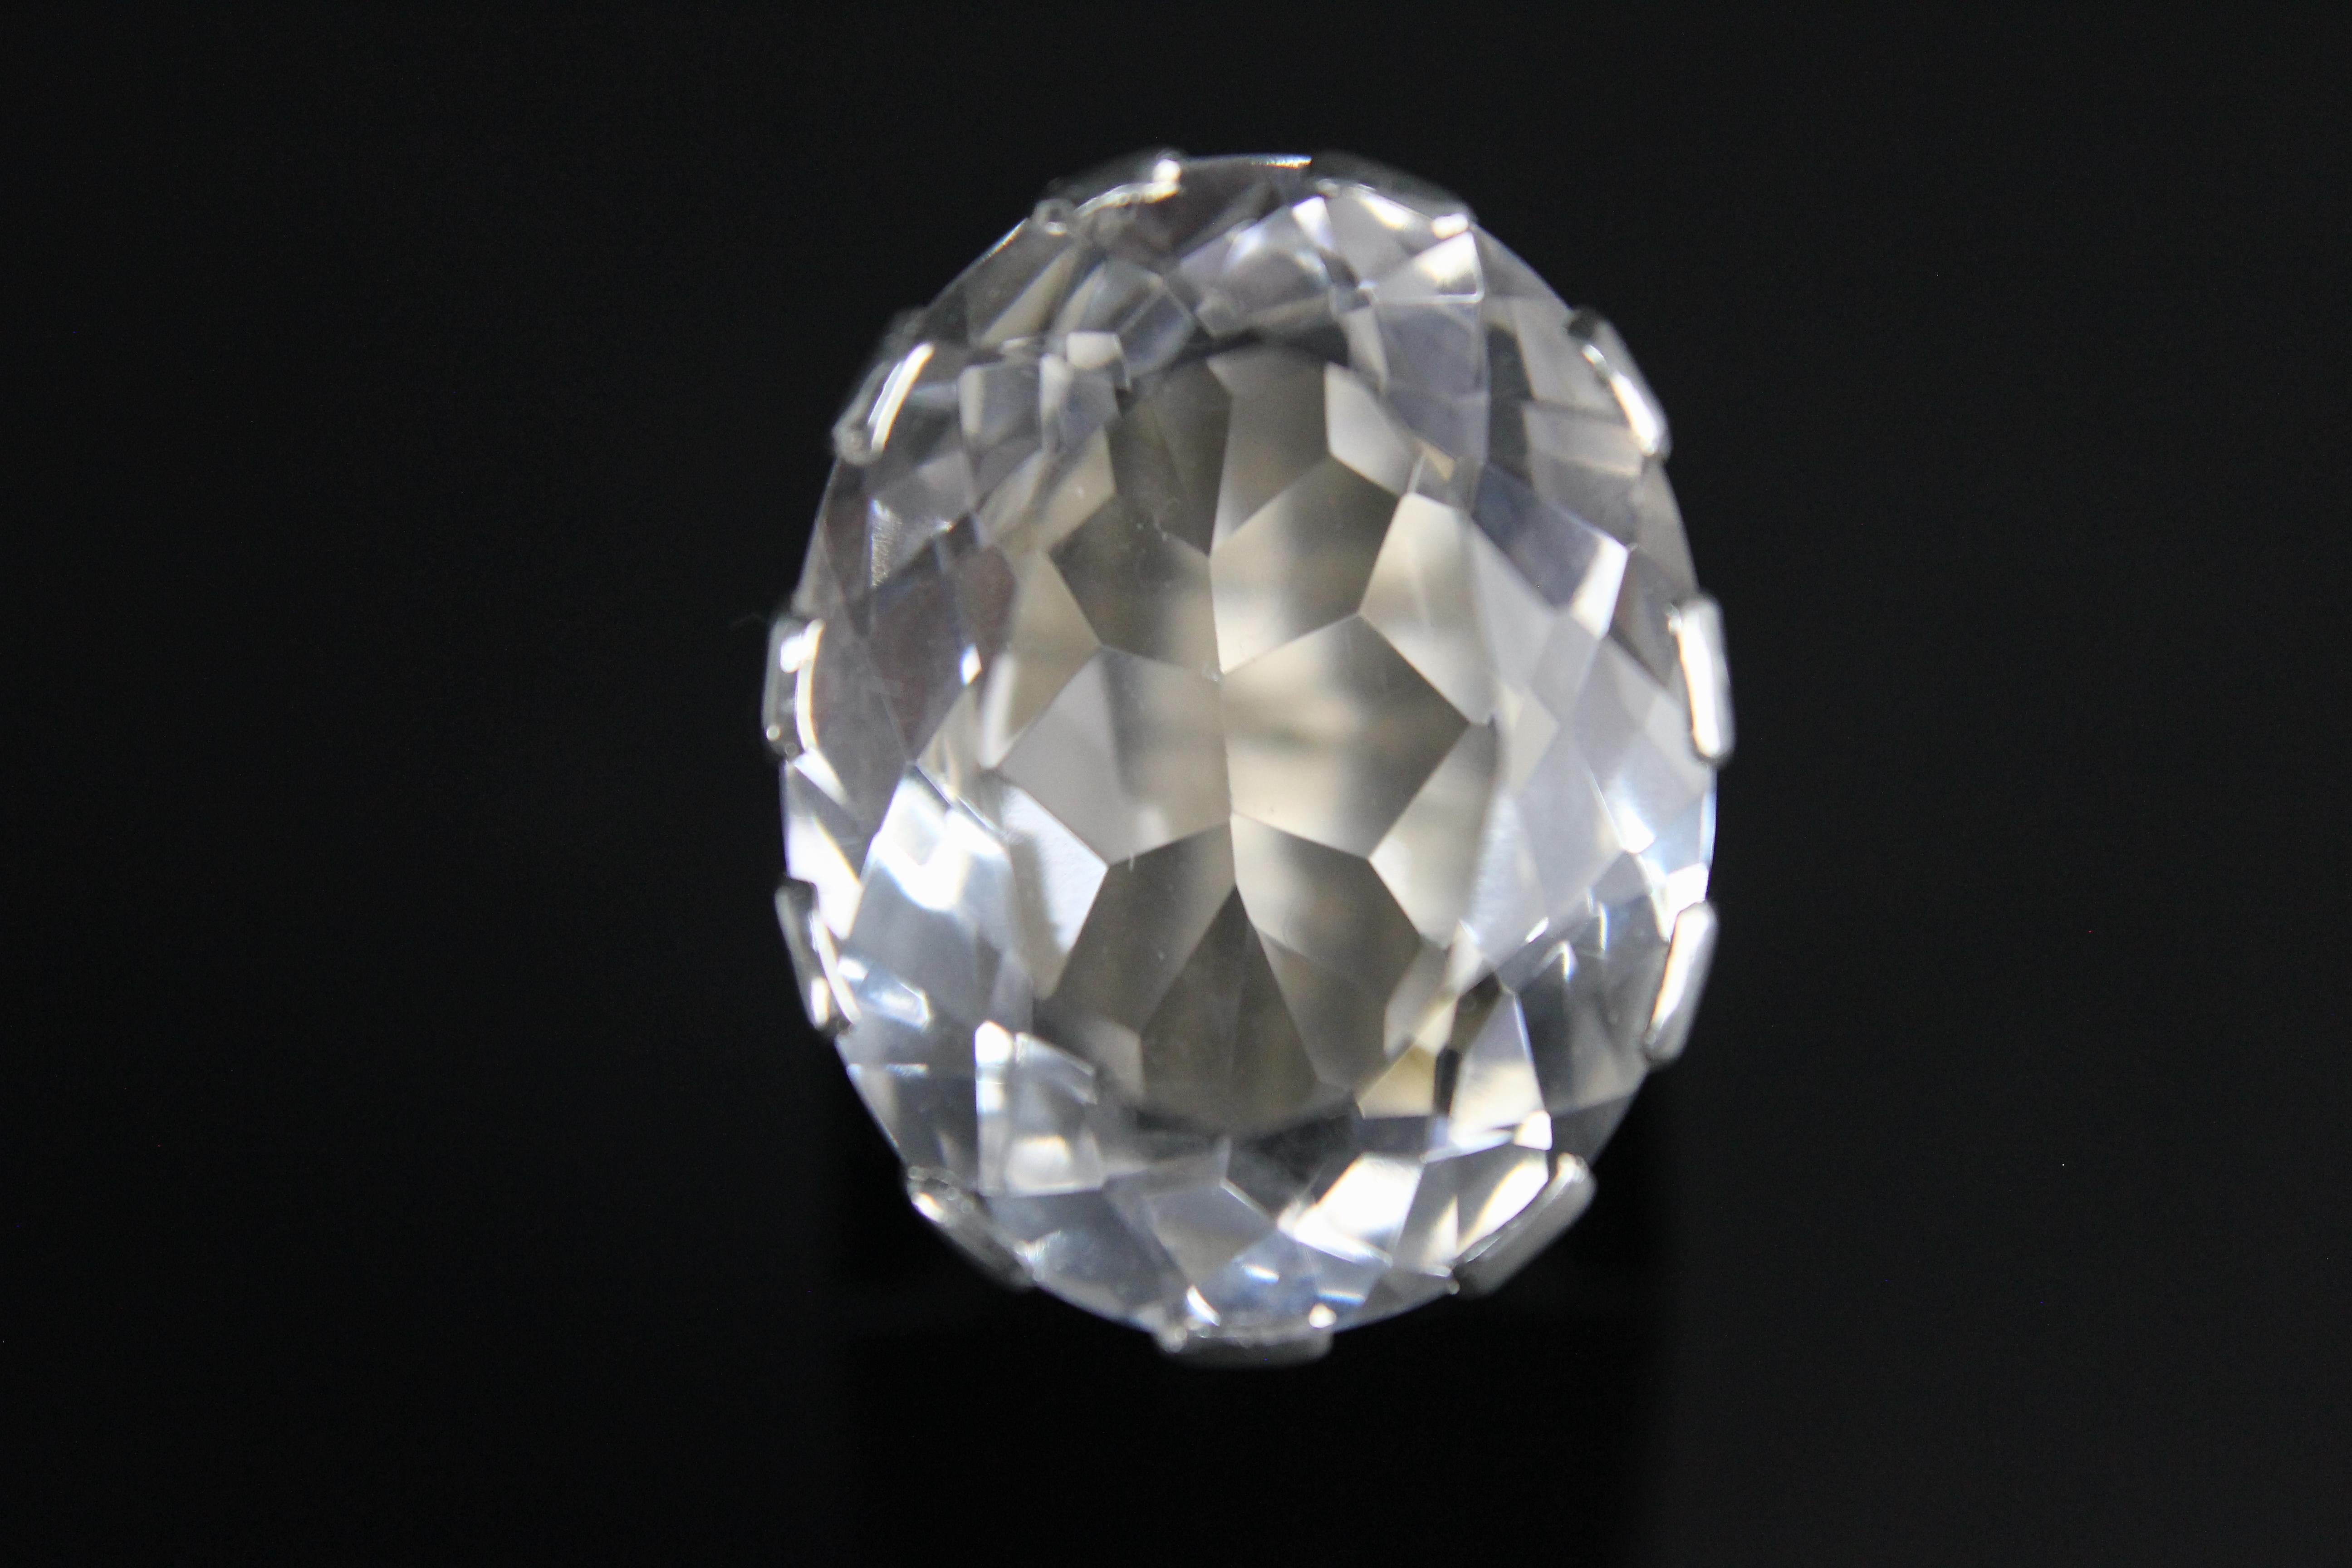 Modernistischer Ring aus Silber und mit einem sehr großen Bergkristall von Kaplan, Stockholm 1968.
Die Größe des diamantgeschliffenen Bergkristalls beträgt 2,8 x 2,4 cm!
Ausgezeichneter Zustand!
Ringgröße 18, US-Größe 8.